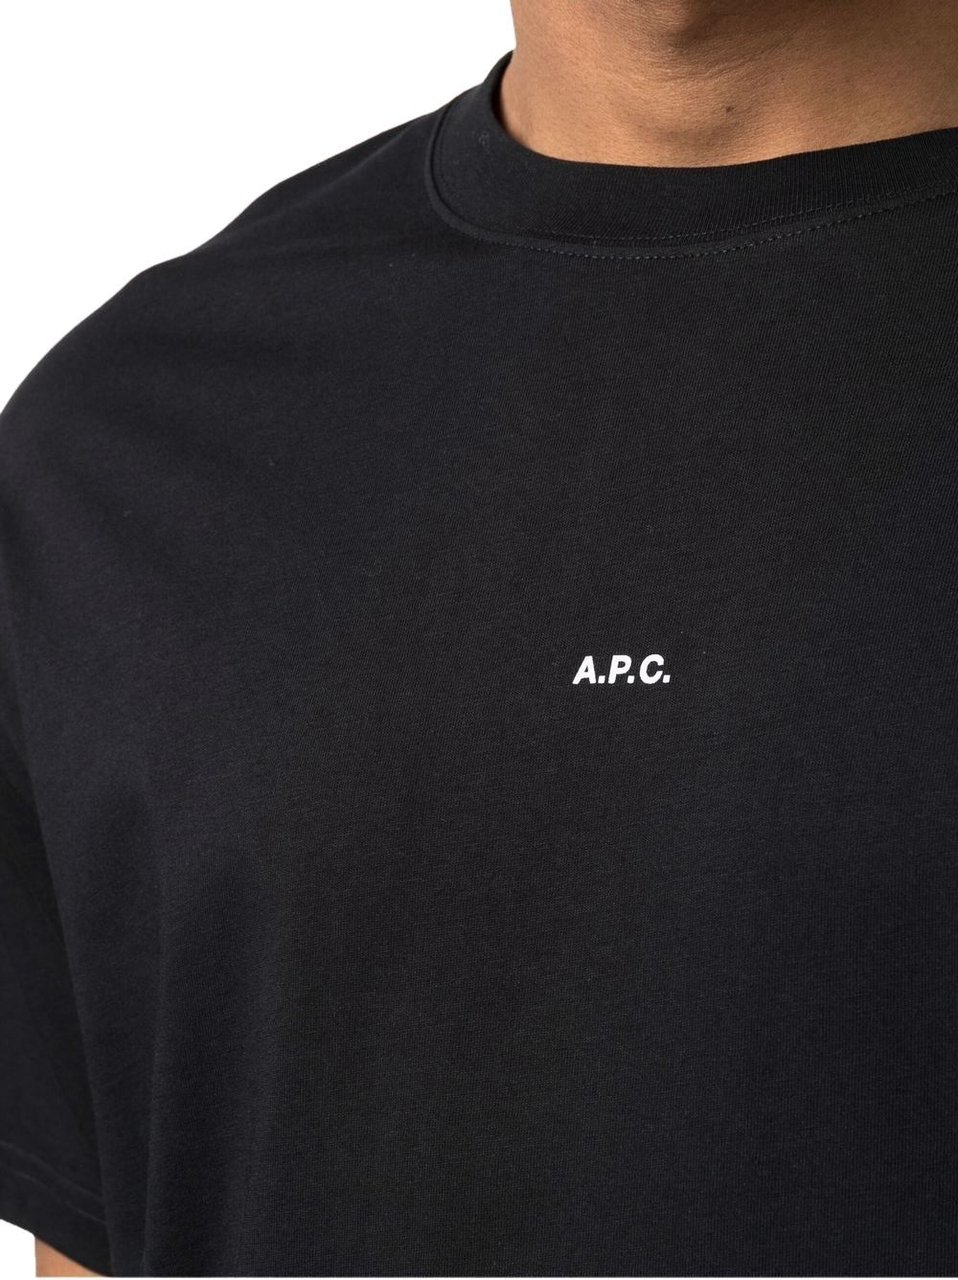 A.P.C. t-shirt kyle black Zwart